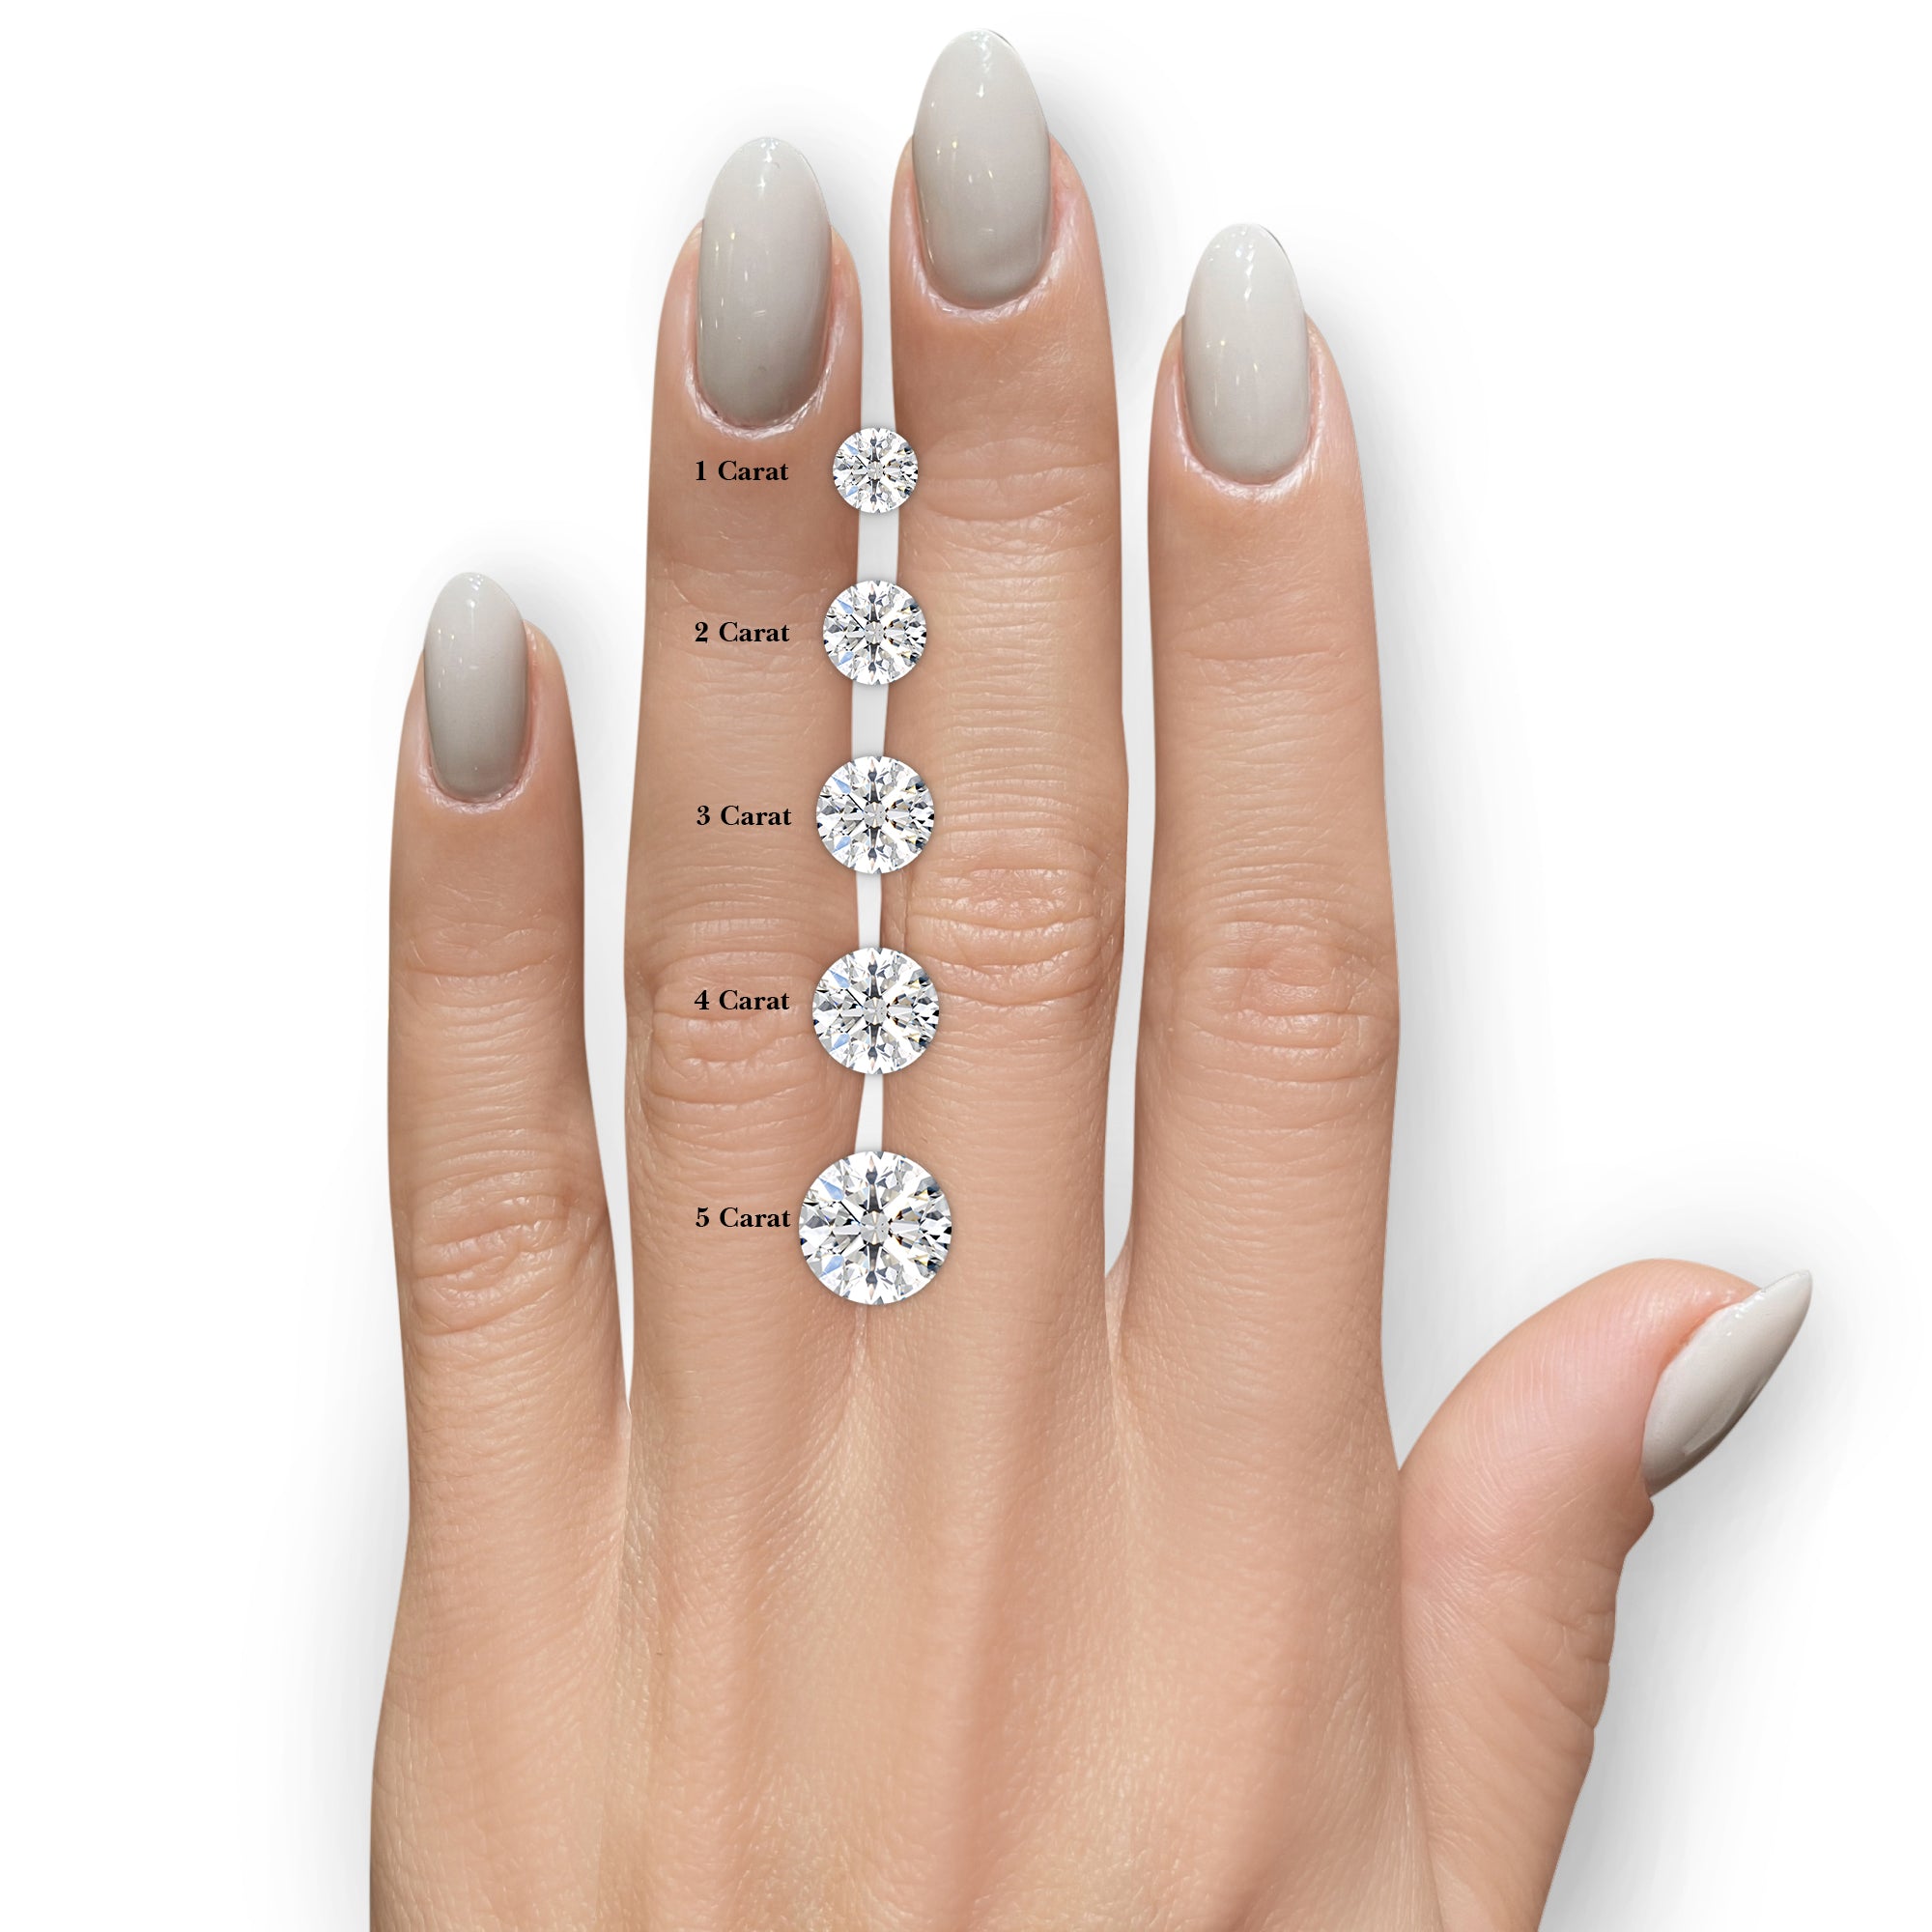 Anna Moissanite & Diamonds Ring -14K White Gold